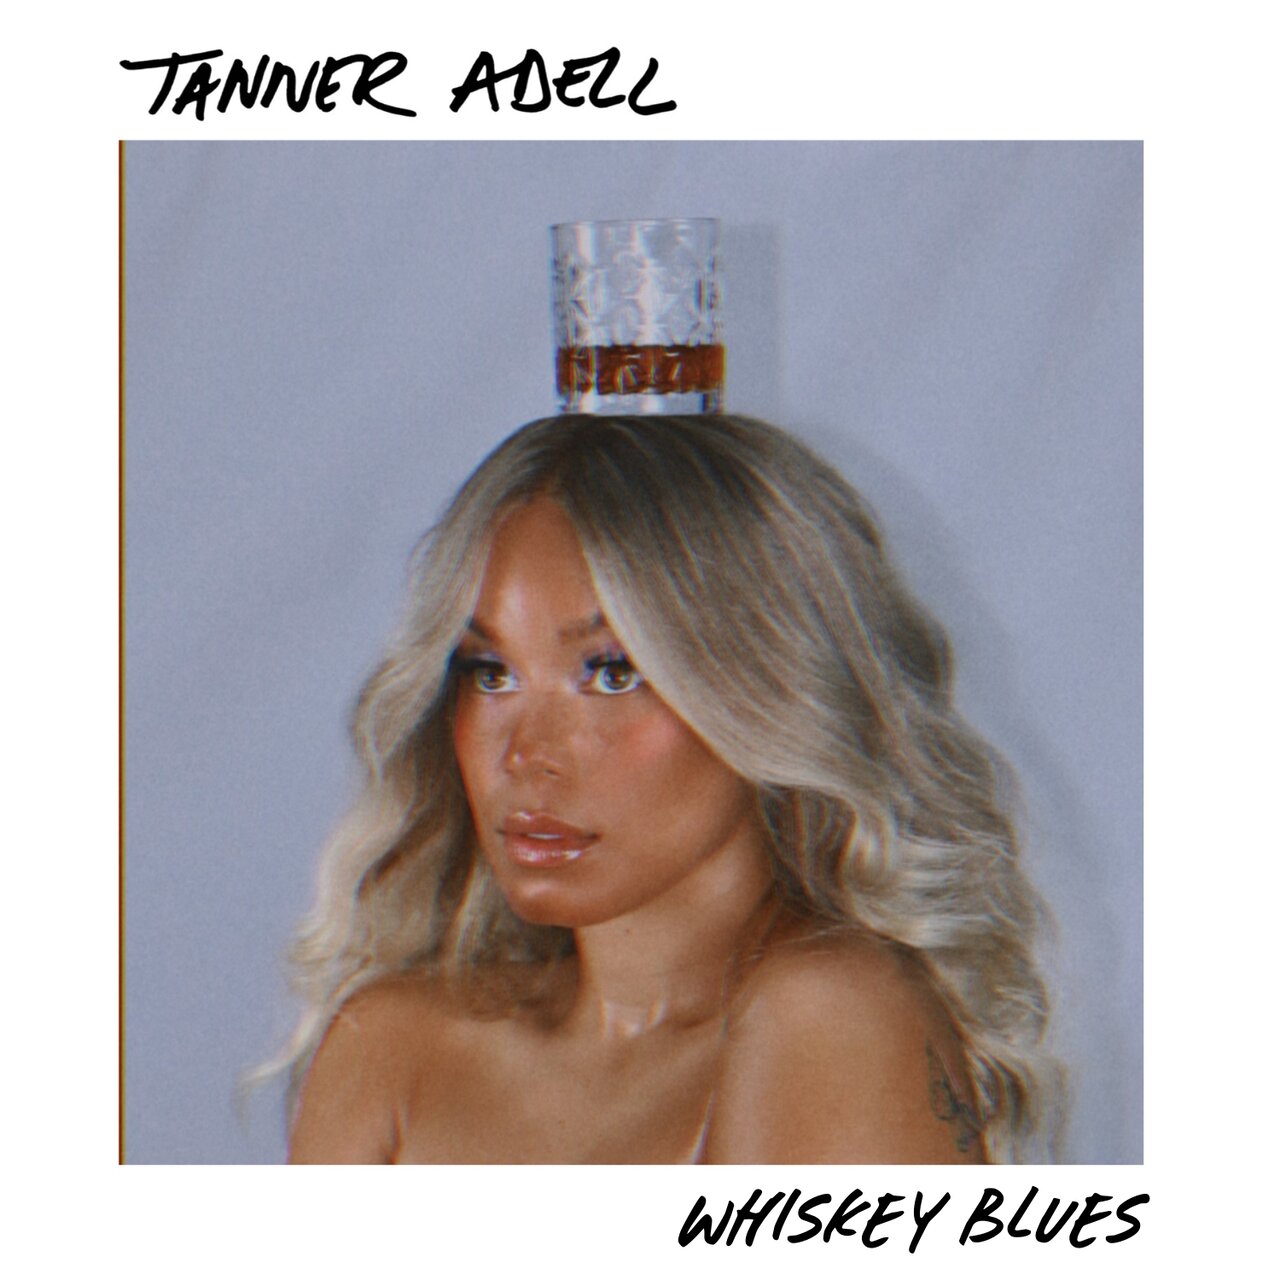 Tanner Adell — Whiskey Blues cover artwork